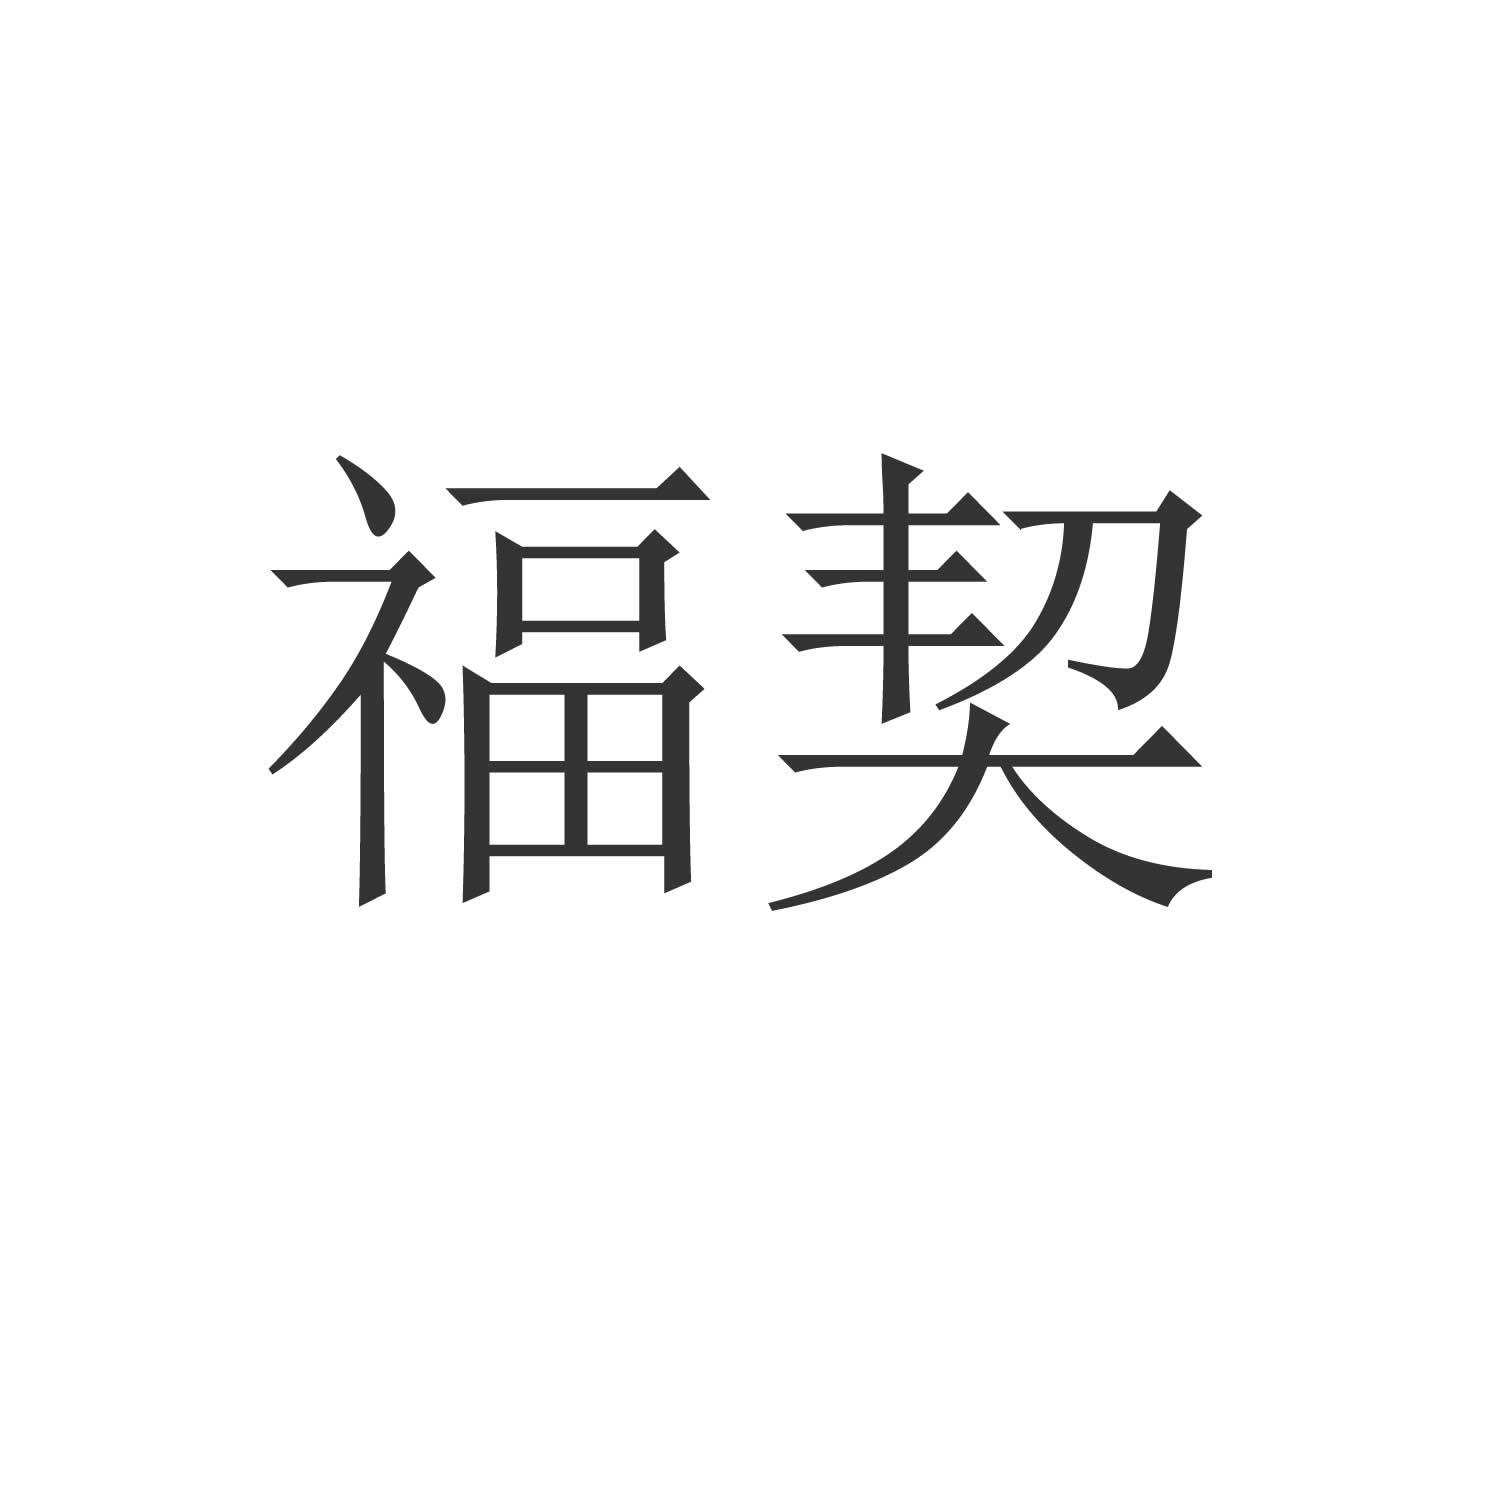 福契logo